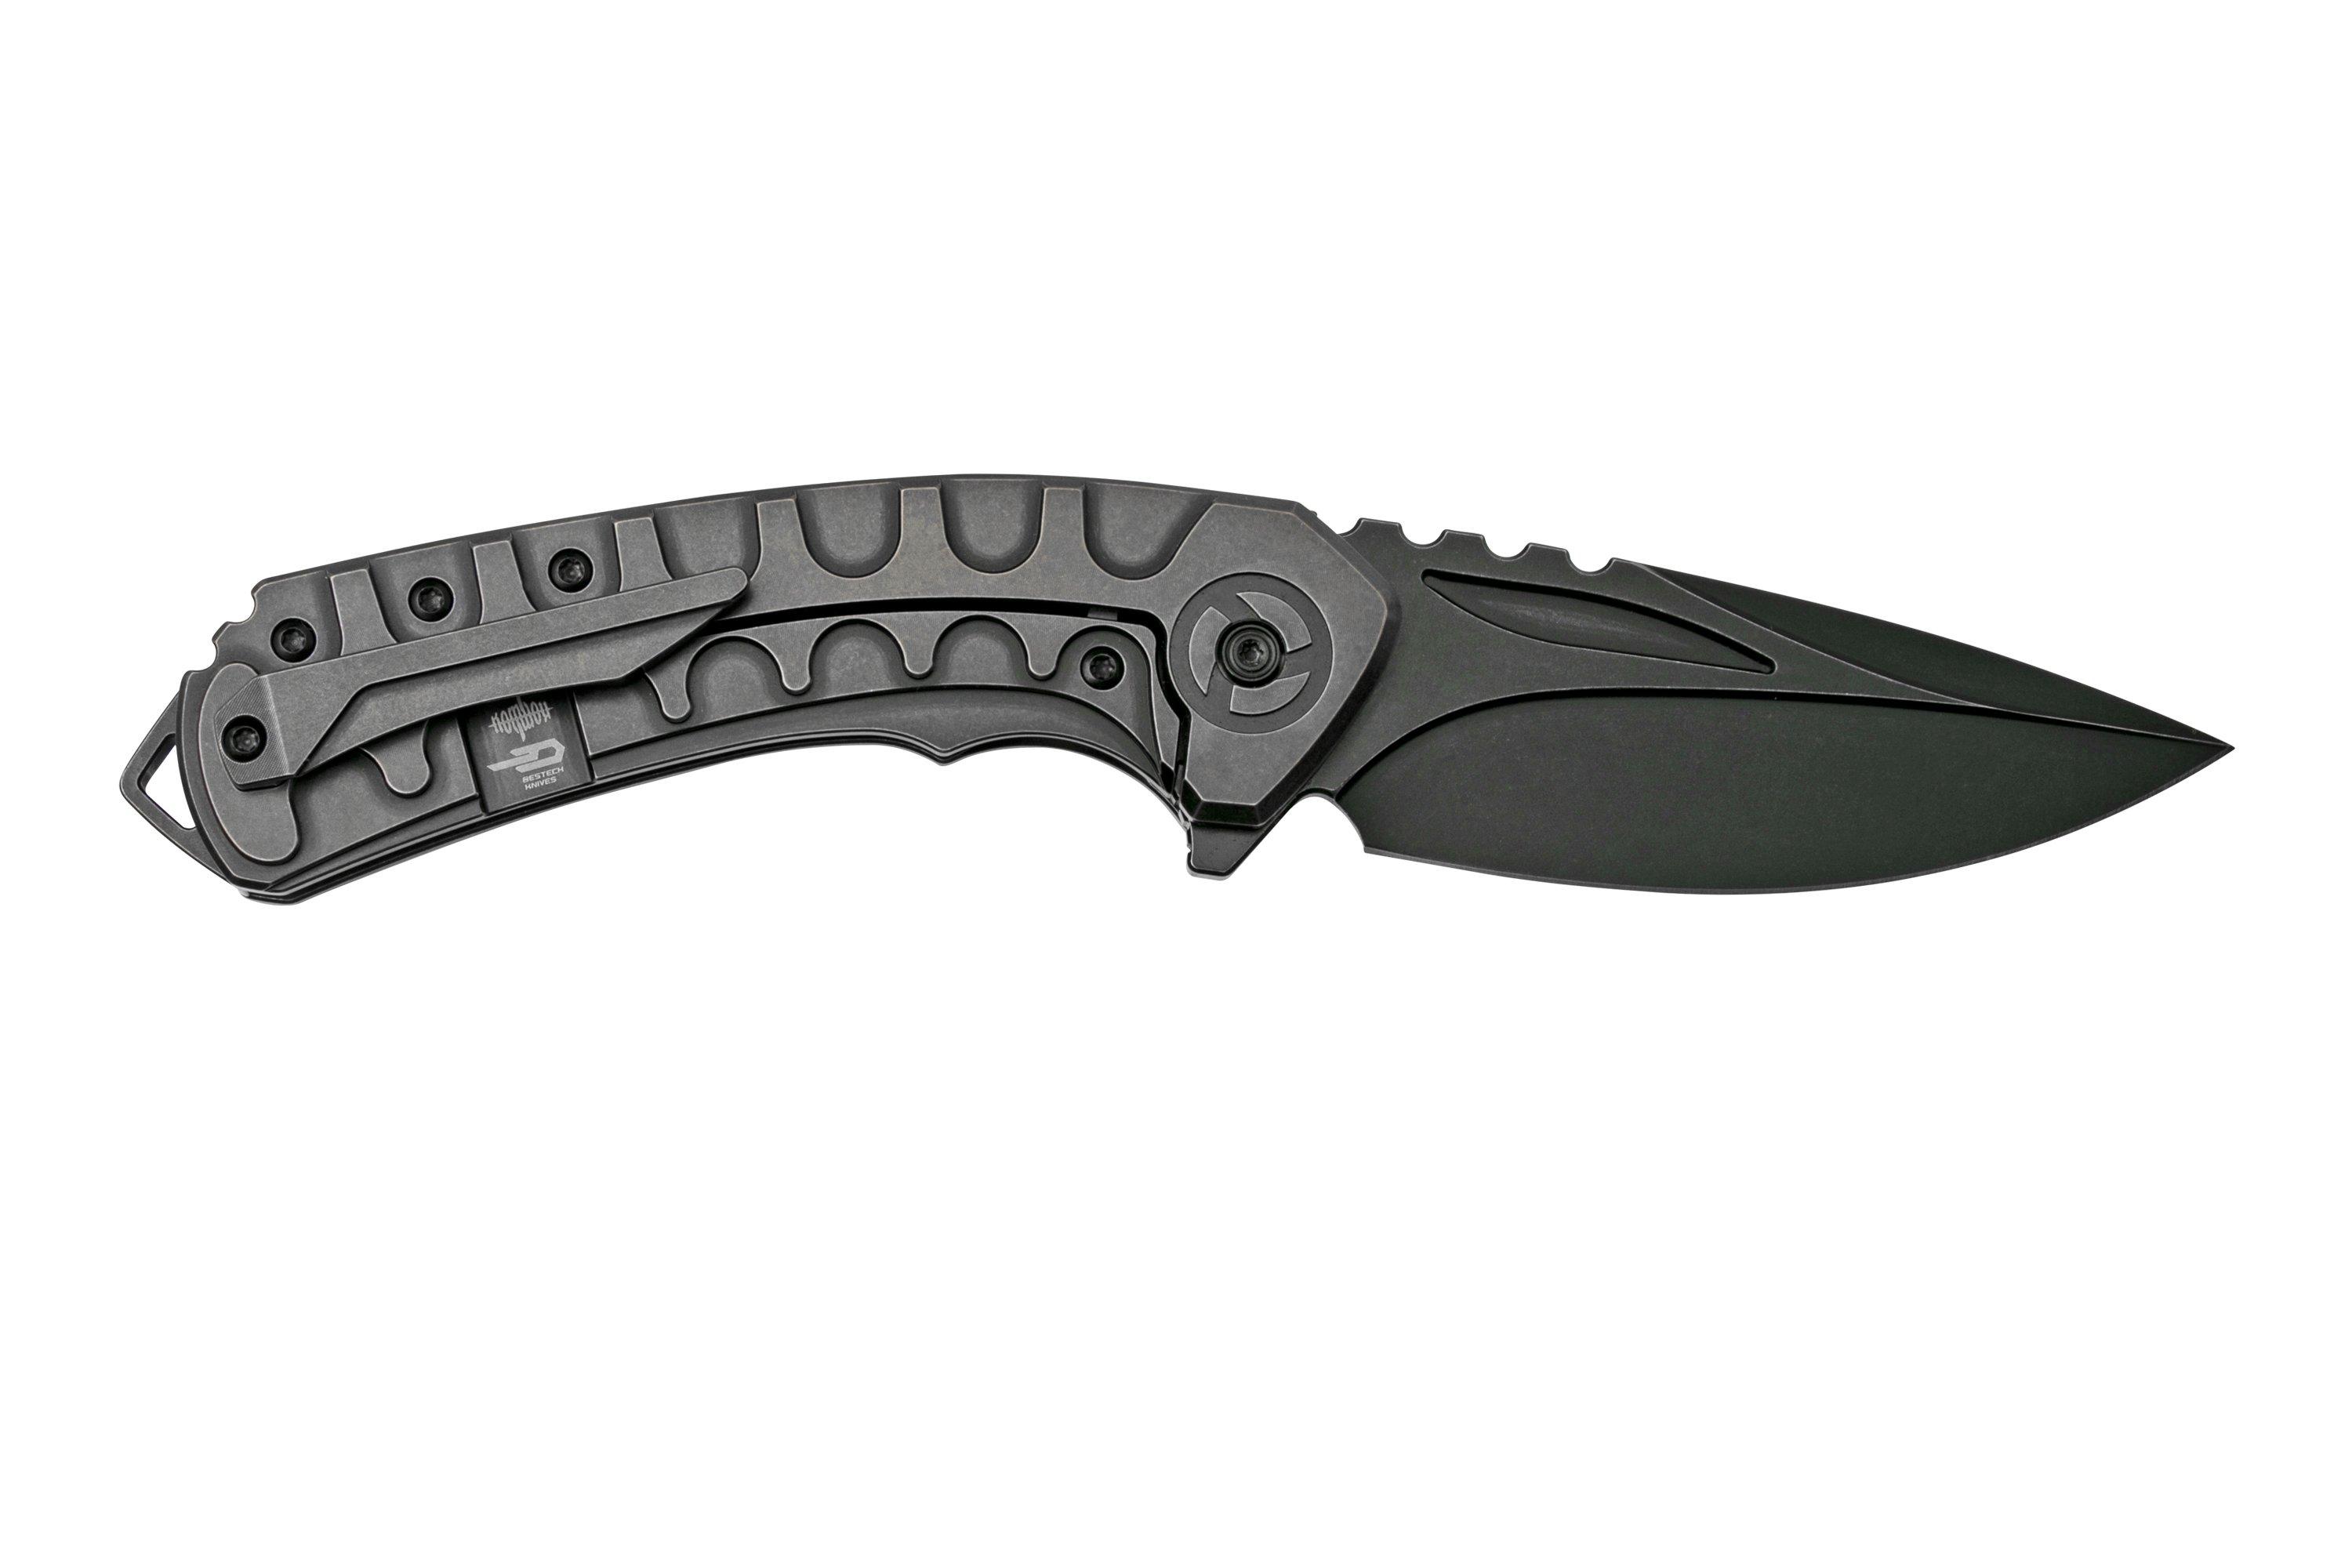 Bestech Buwaya BT2203C Black Titanium, pocket knife | Advantageously ...